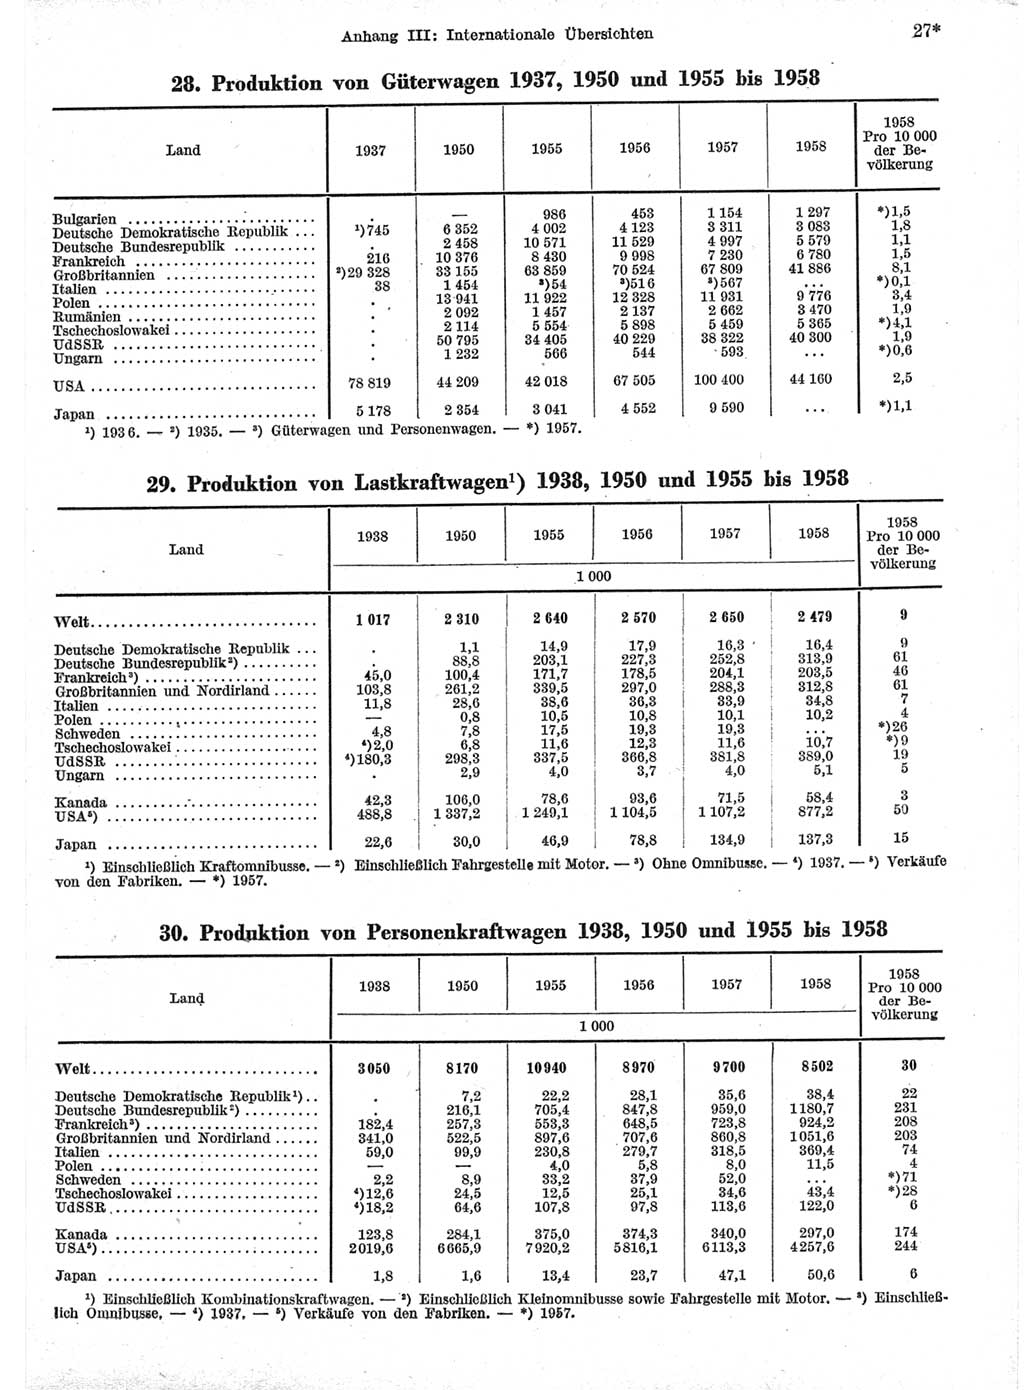 Statistisches Jahrbuch der Deutschen Demokratischen Republik (DDR) 1959, Seite 27 (Stat. Jb. DDR 1959, S. 27)